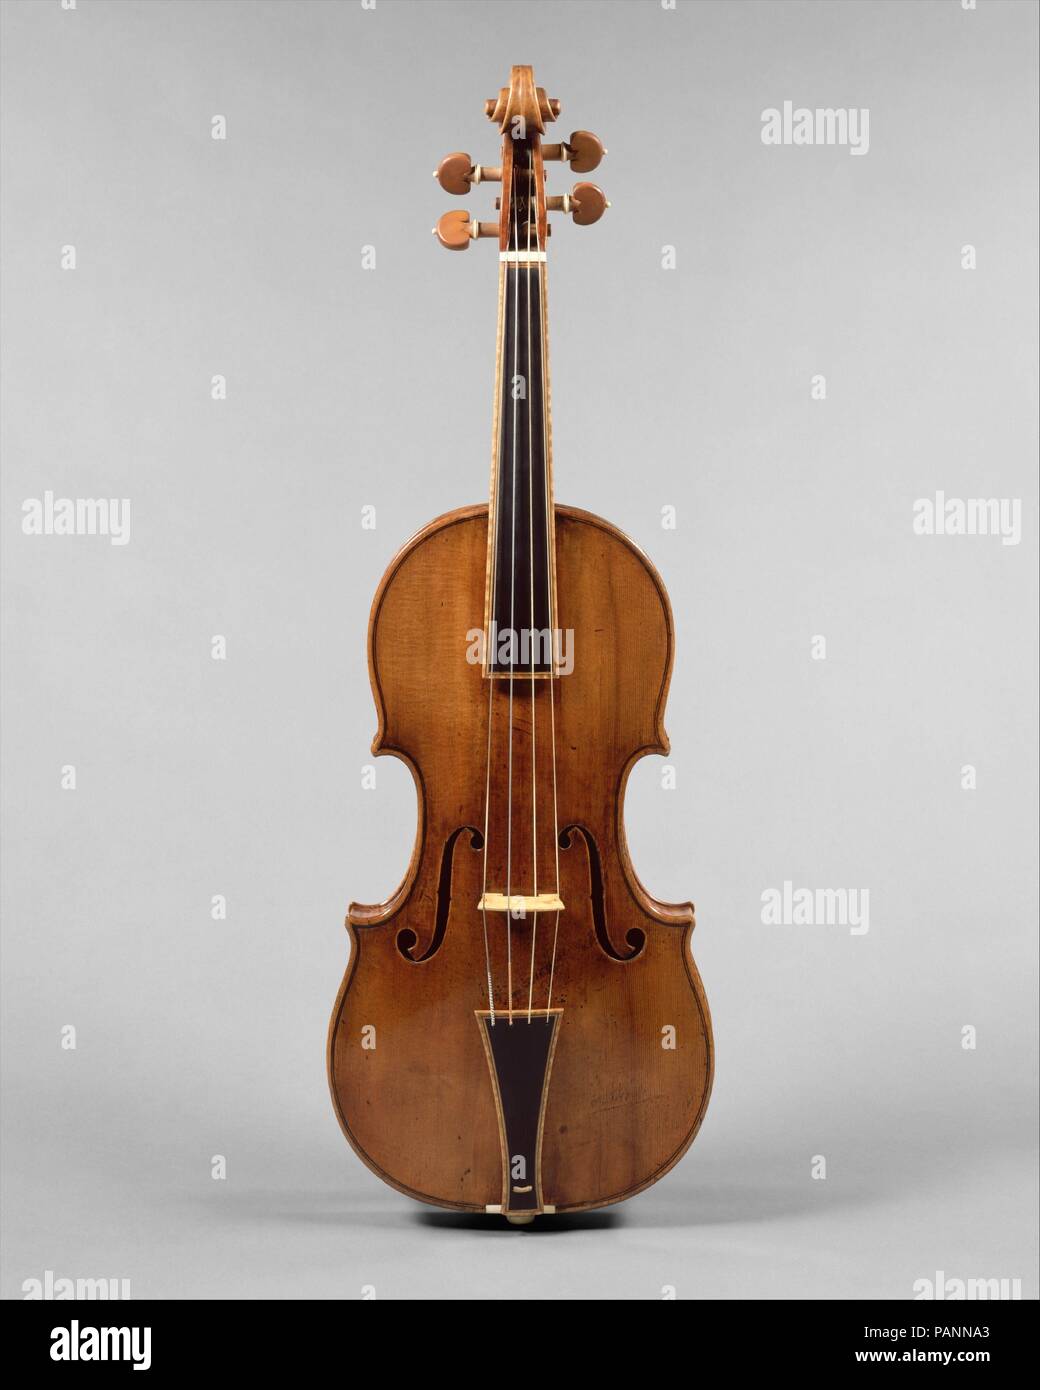 El violín' Gould. Cultura: Italiano (Cremona). Dimensiones: Altura: 23 1/4  pulg. (59 cm) de anchura: 7 3/4 in. (19,7 cm). Maker: Antonio Stradivari  (Italiano, Cremona Cremona), 1644-1737. Fecha: 1693. 'El violín' Gould